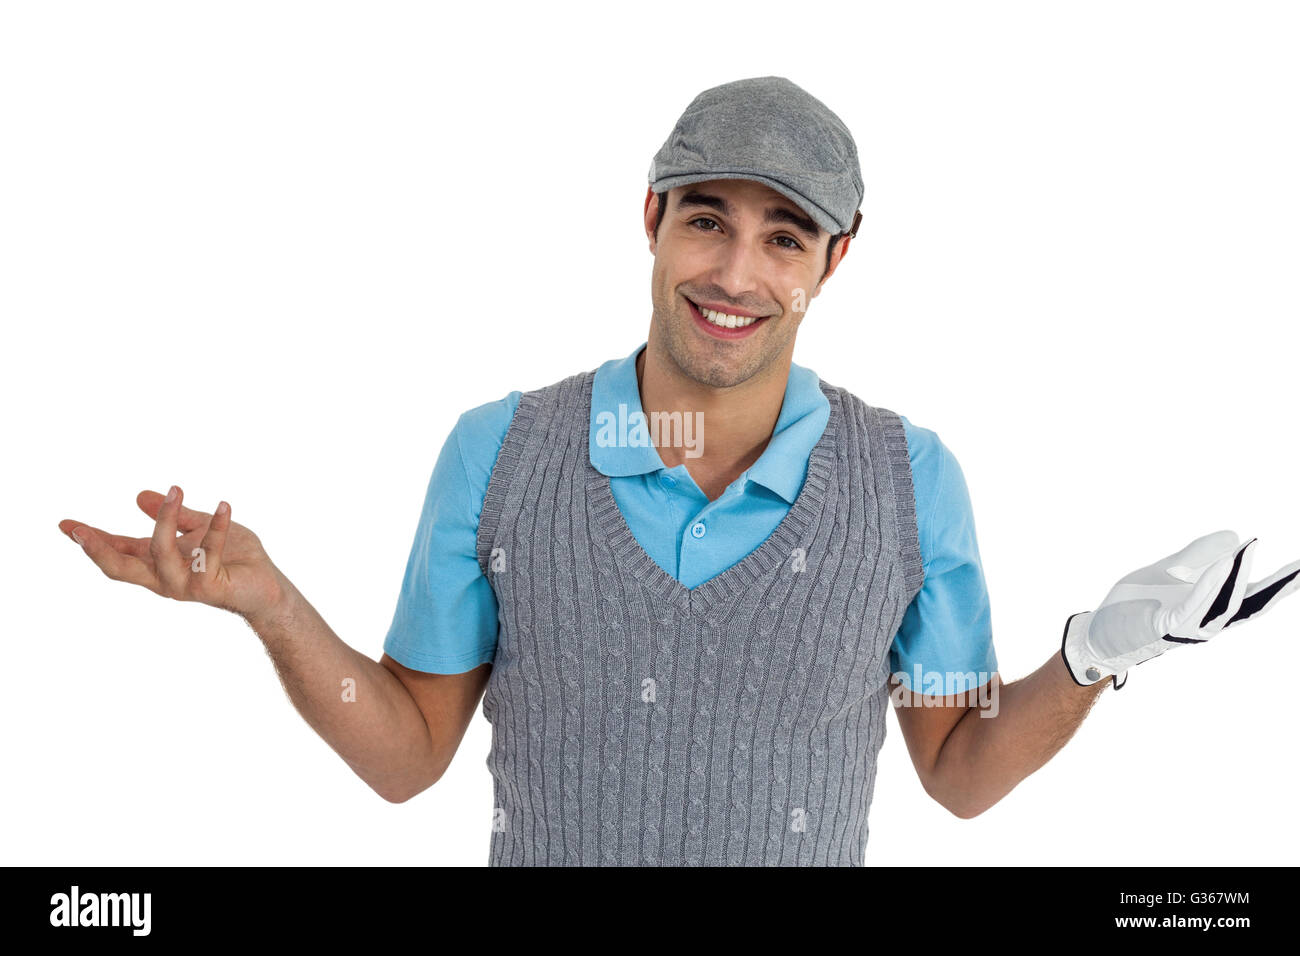 Zuversichtlich golf Player auf weißem Hintergrund posiert Stockfoto